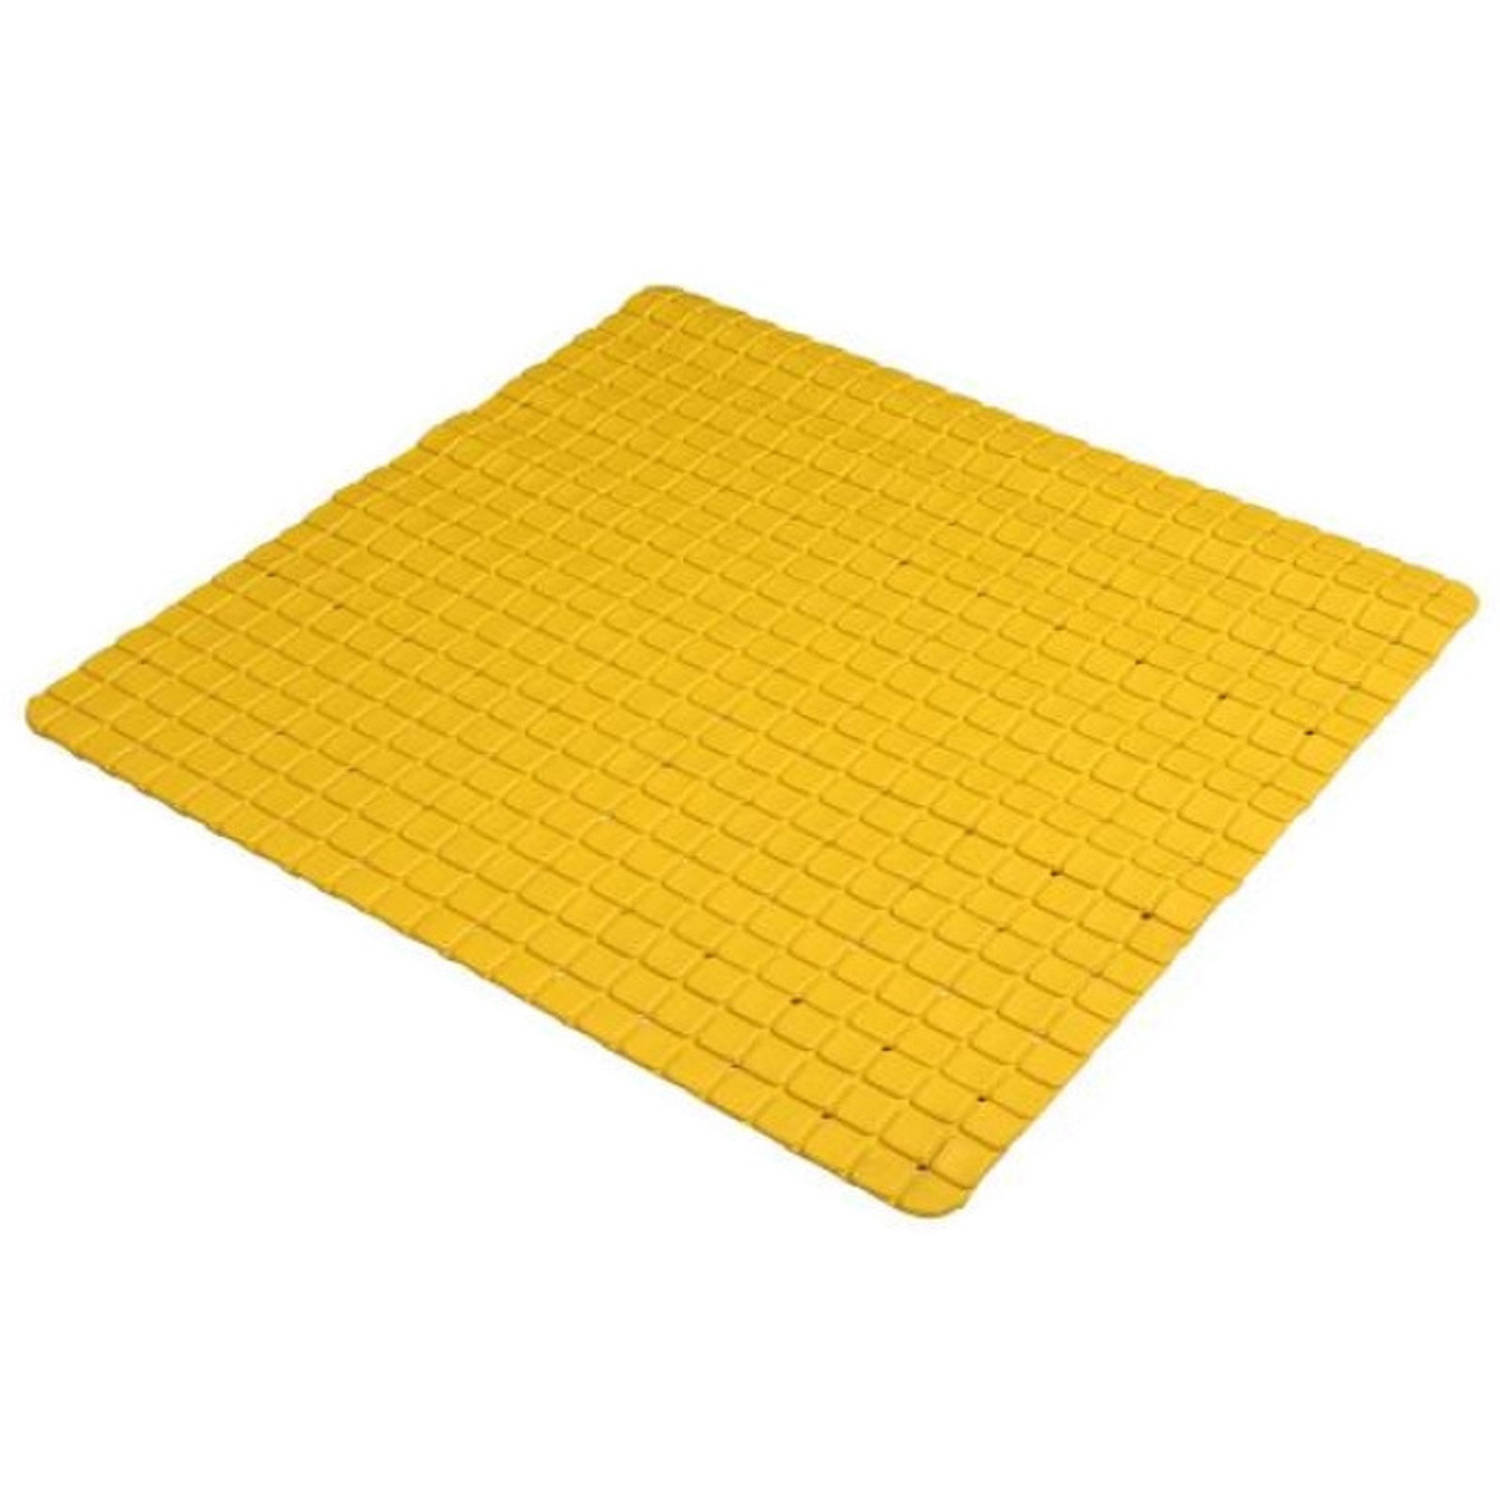 Urban Living Badkamer/douche anti slip mat - rubber - voor op de vloer - okergeel - 55 x 55 cm